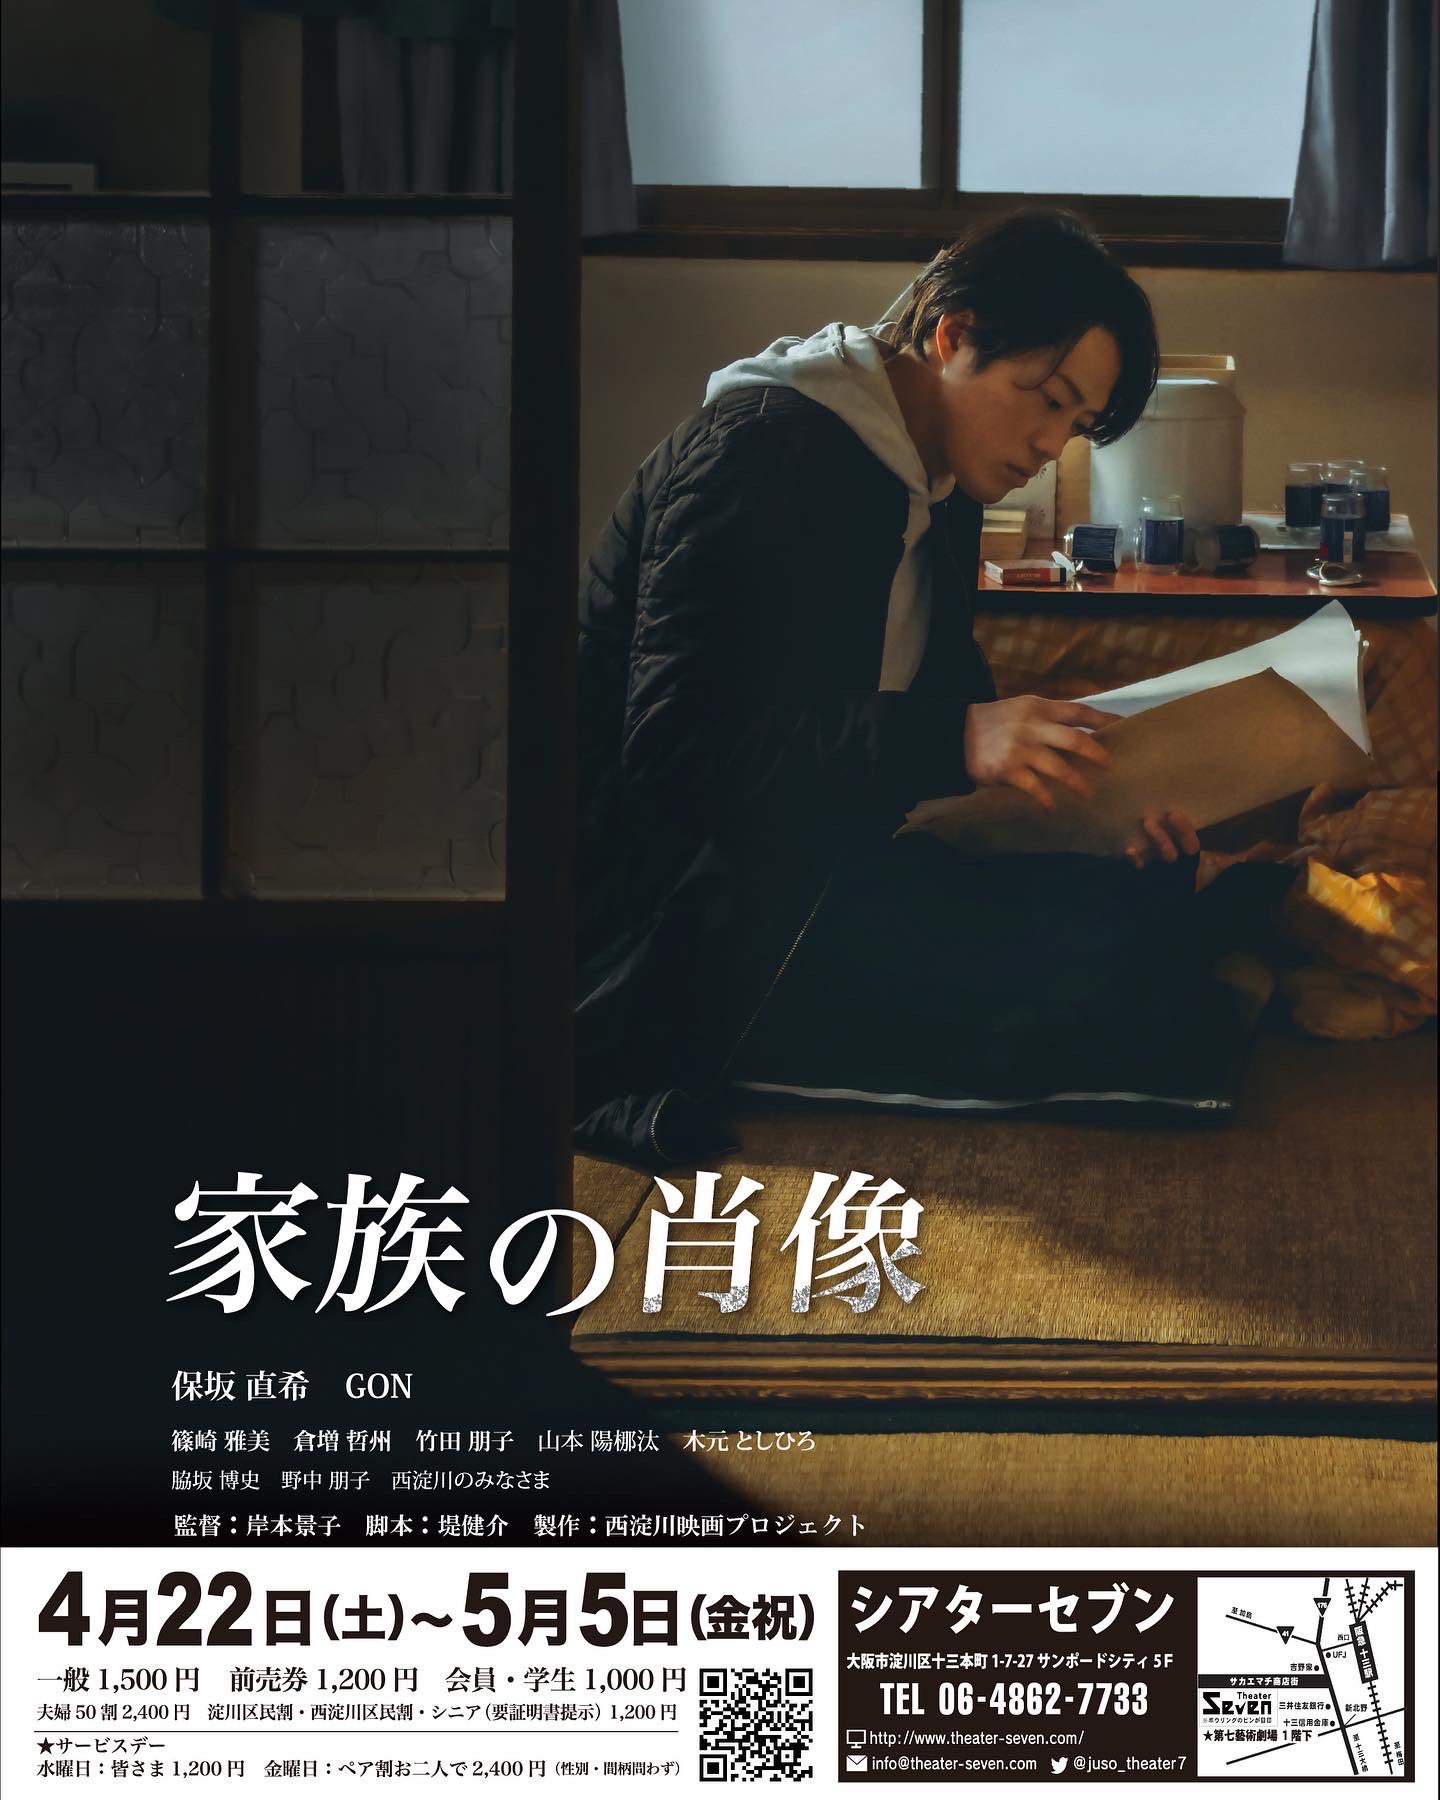 映画『家族の肖像』「親は、非常に有難い存在」撮影部・照明部の太田智樹さんインタビュー